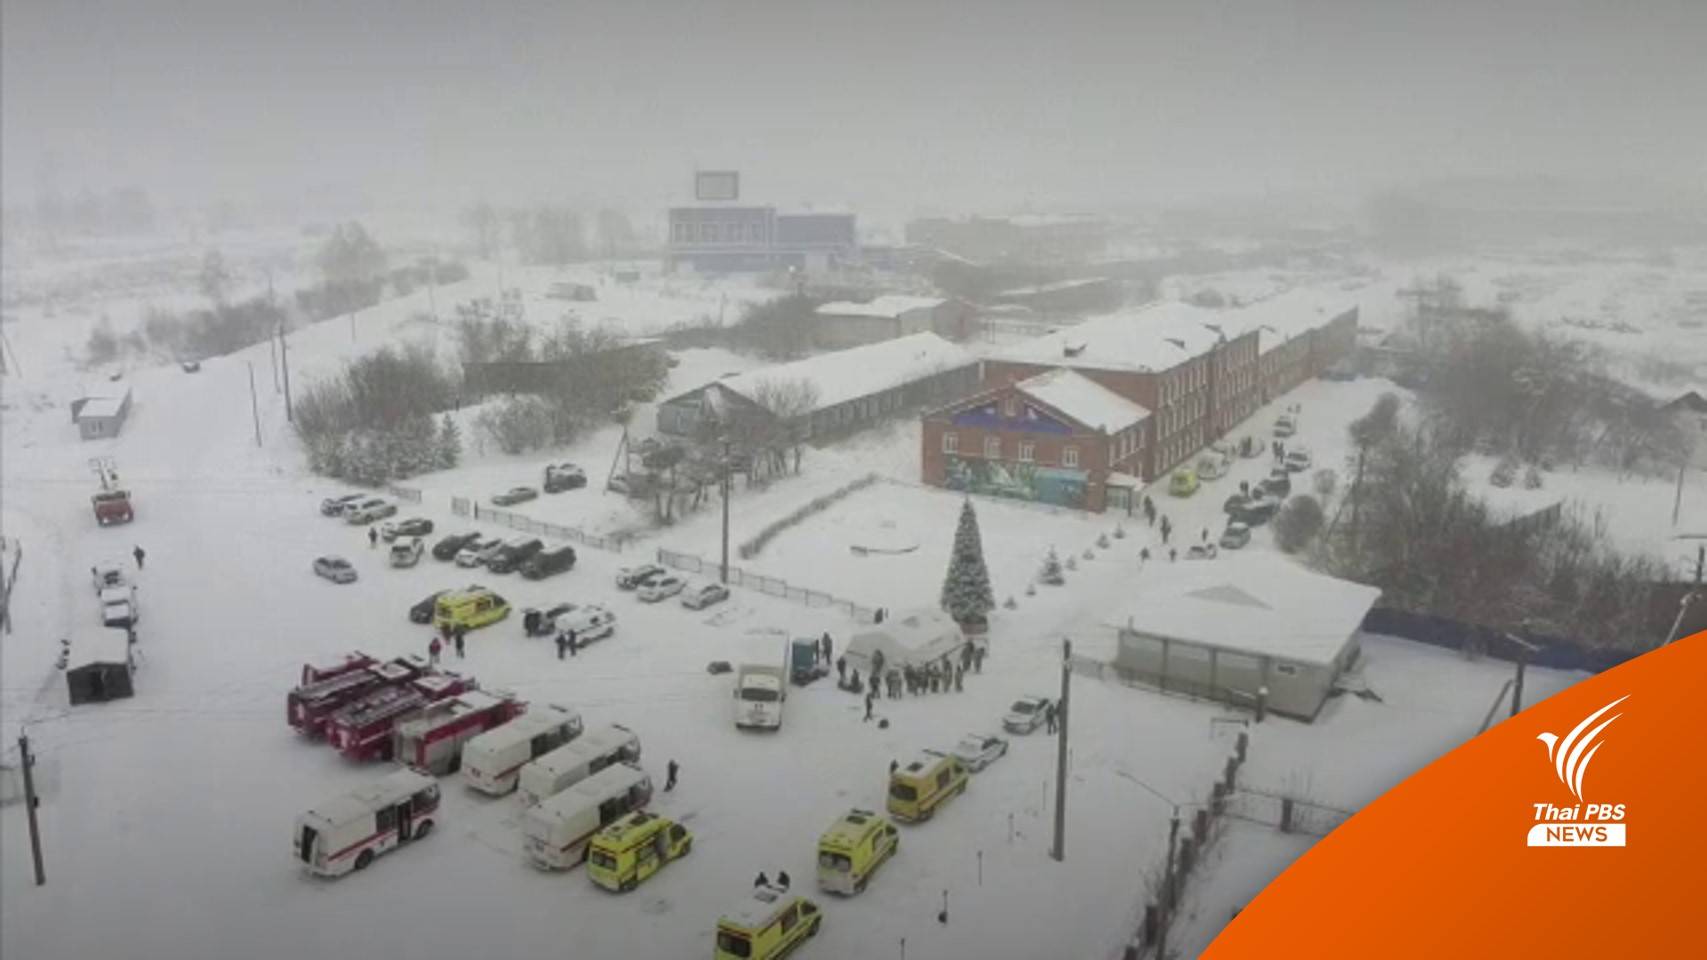 เกิดอุบัติเหตุในเหมืองถ่านหินรัสเซีย คาดเสียชีวิตอย่างน้อย 52 คน